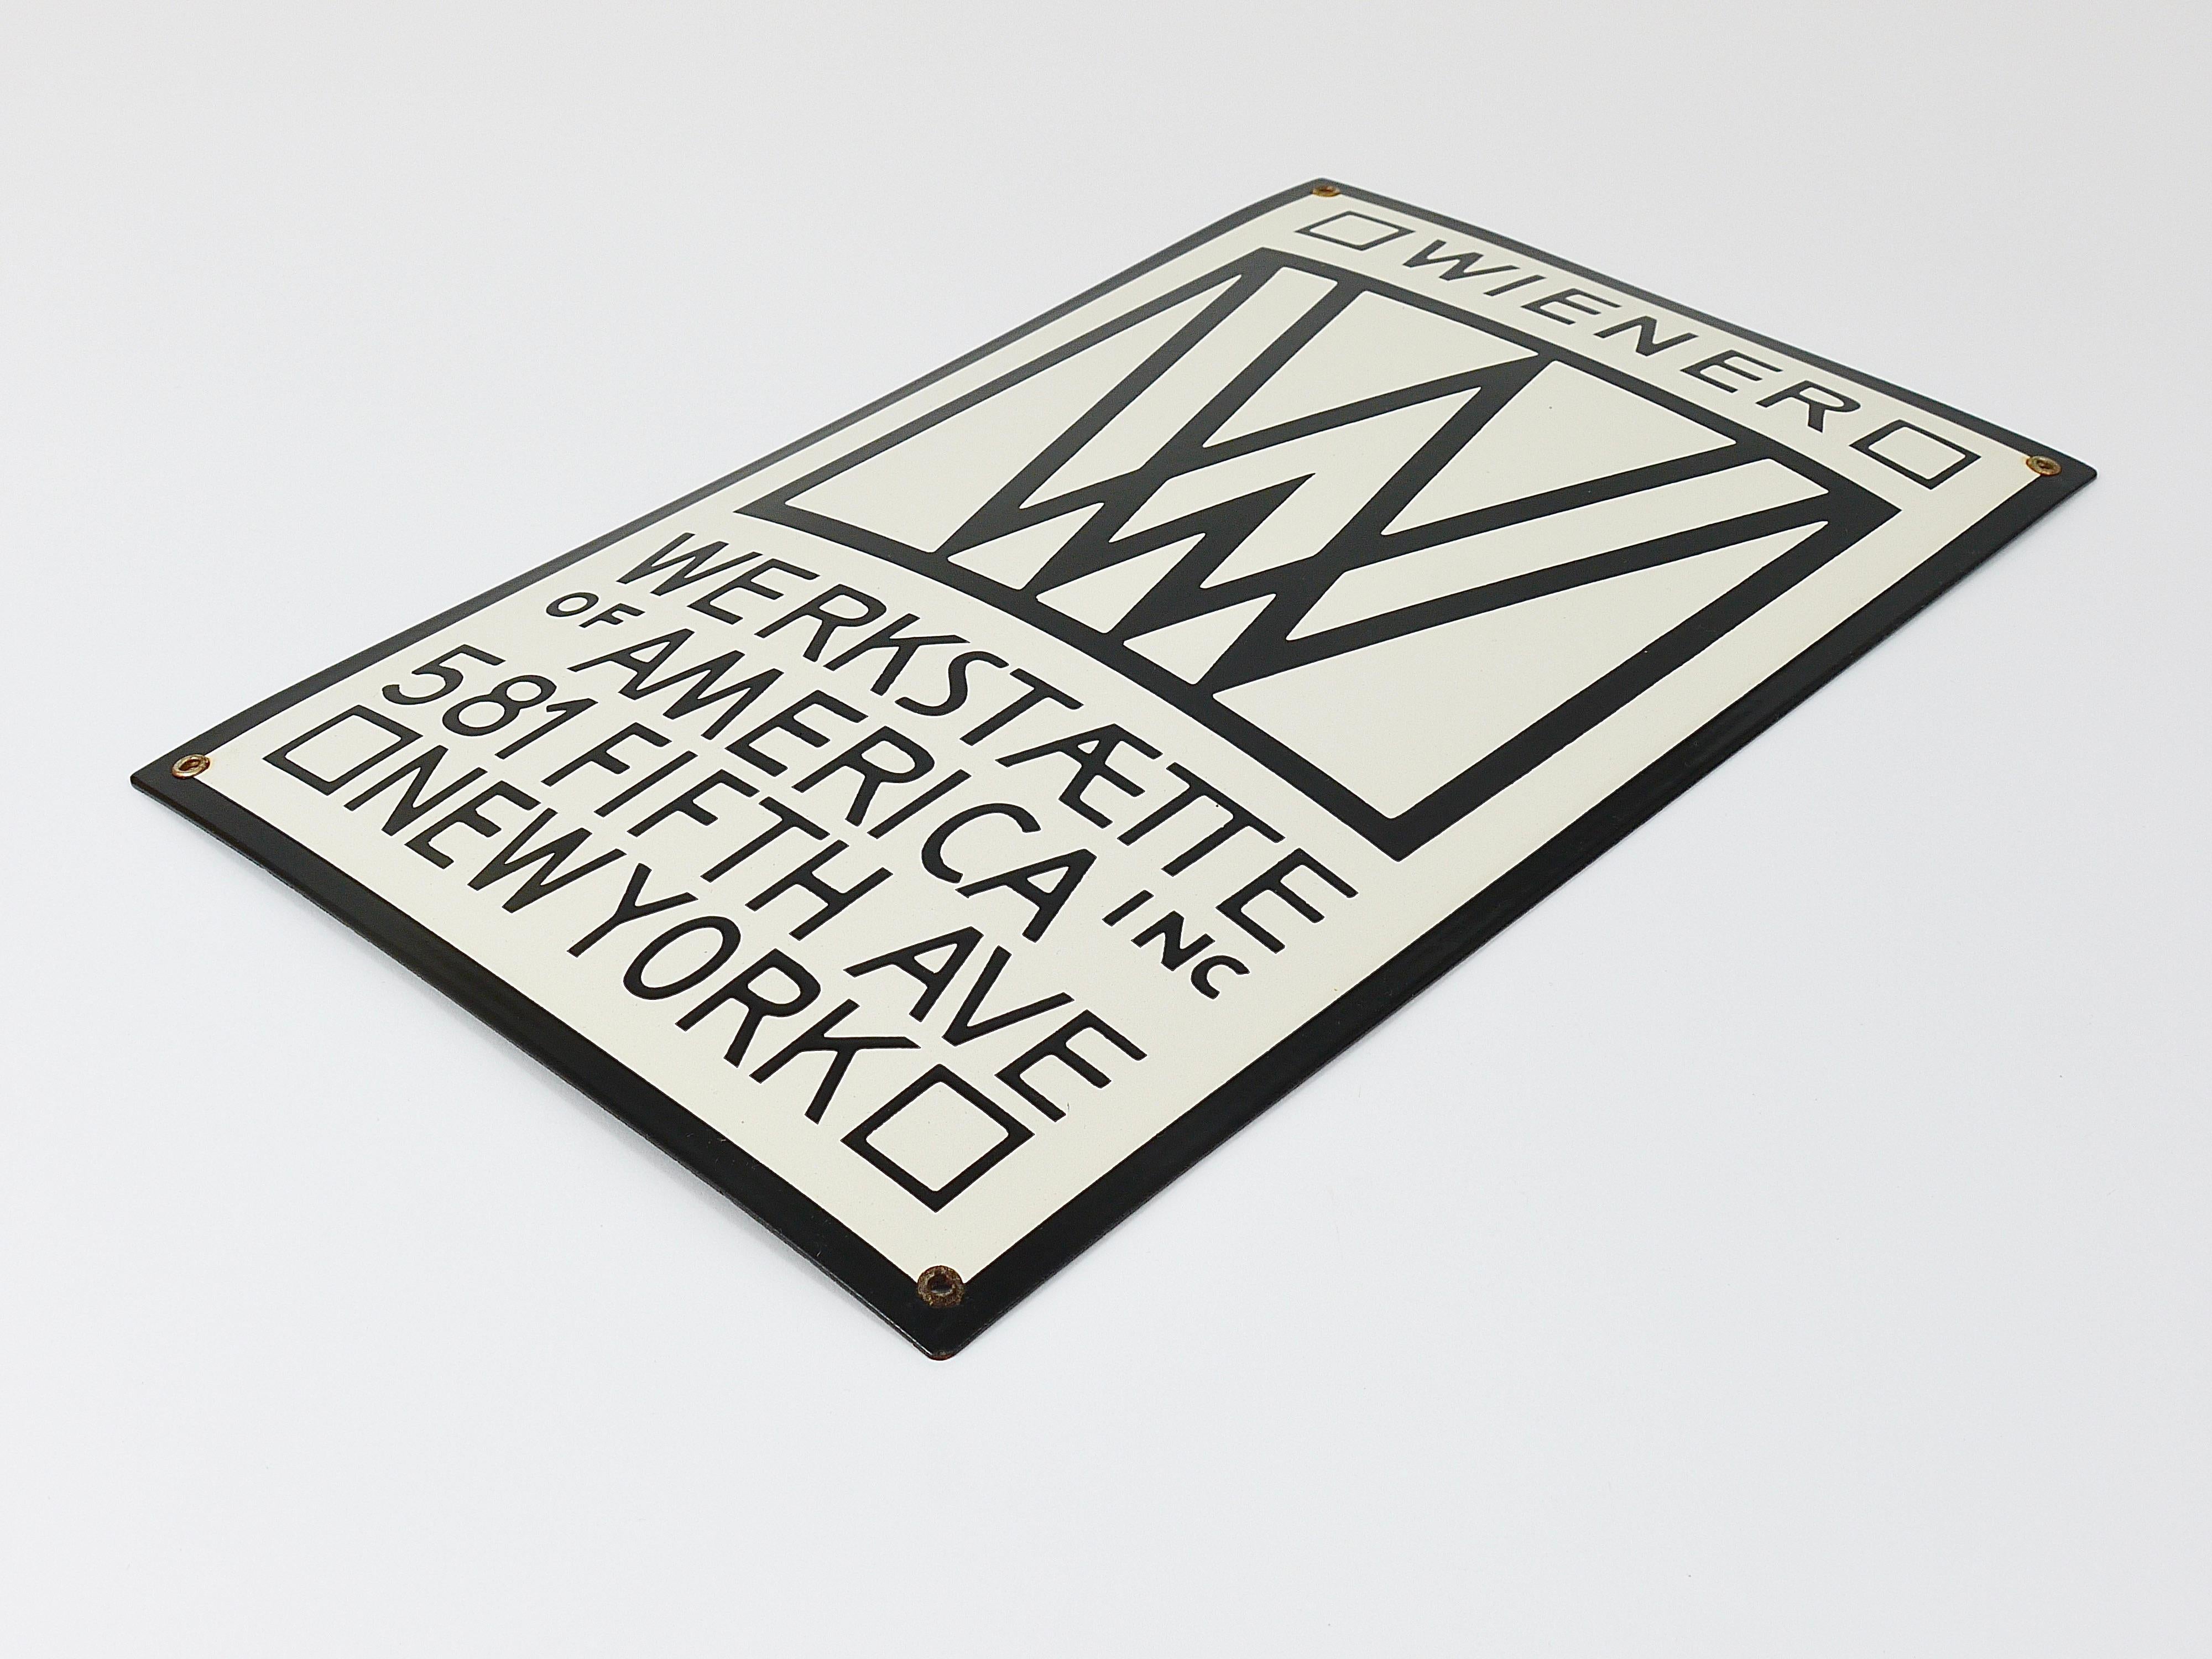 Metal Rare Wiener Werkstätte of America Inc New York Enameled Advertising Sign For Sale